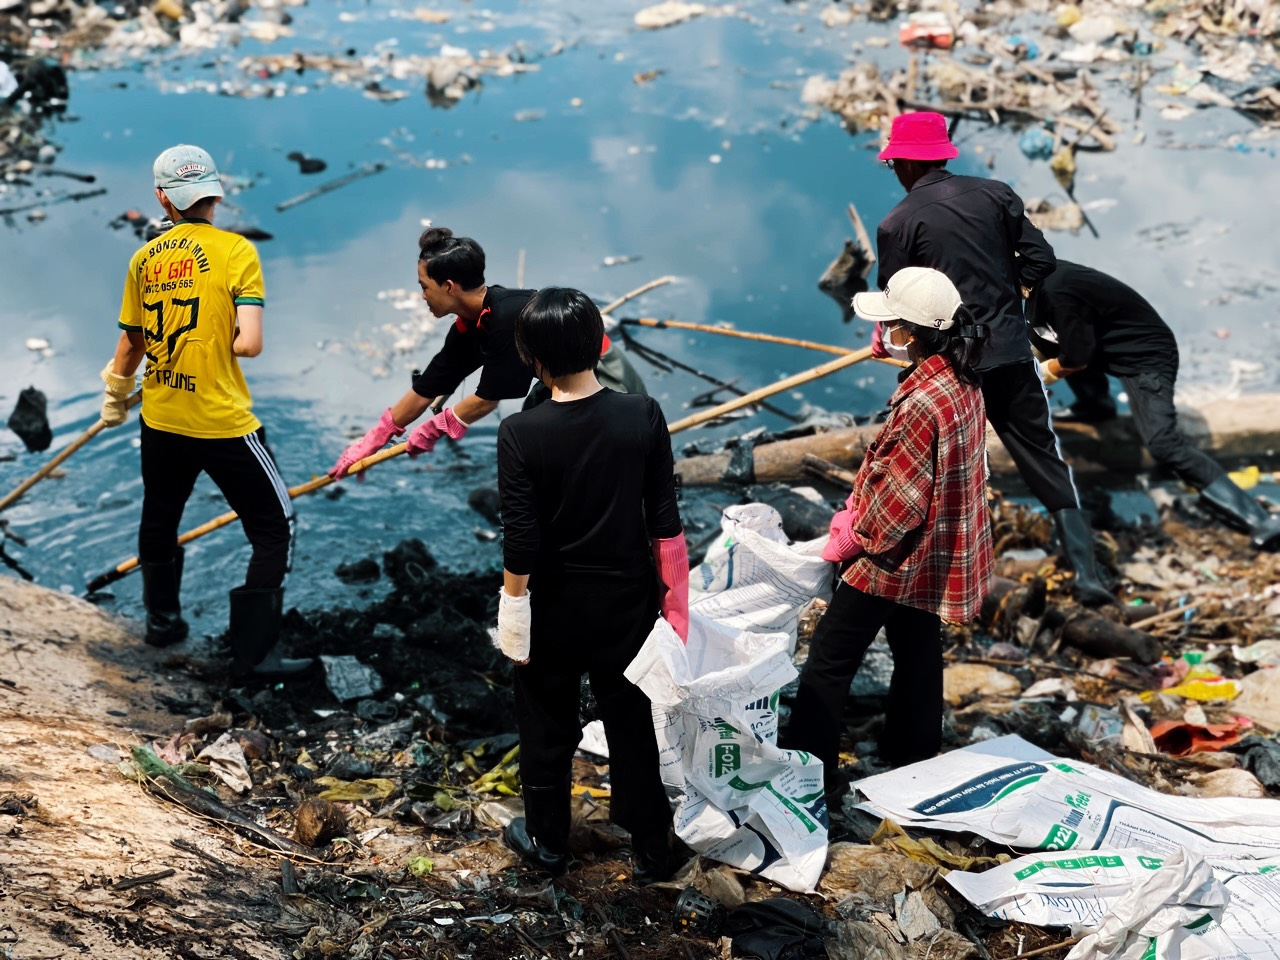 Nhóm Kiên Giang Xanh hướng tới góp sức để thay đổi vấn đề ô nhiễm môi trường biển, từ đó cải thiện môi trường sống của mọi người xung quanh.